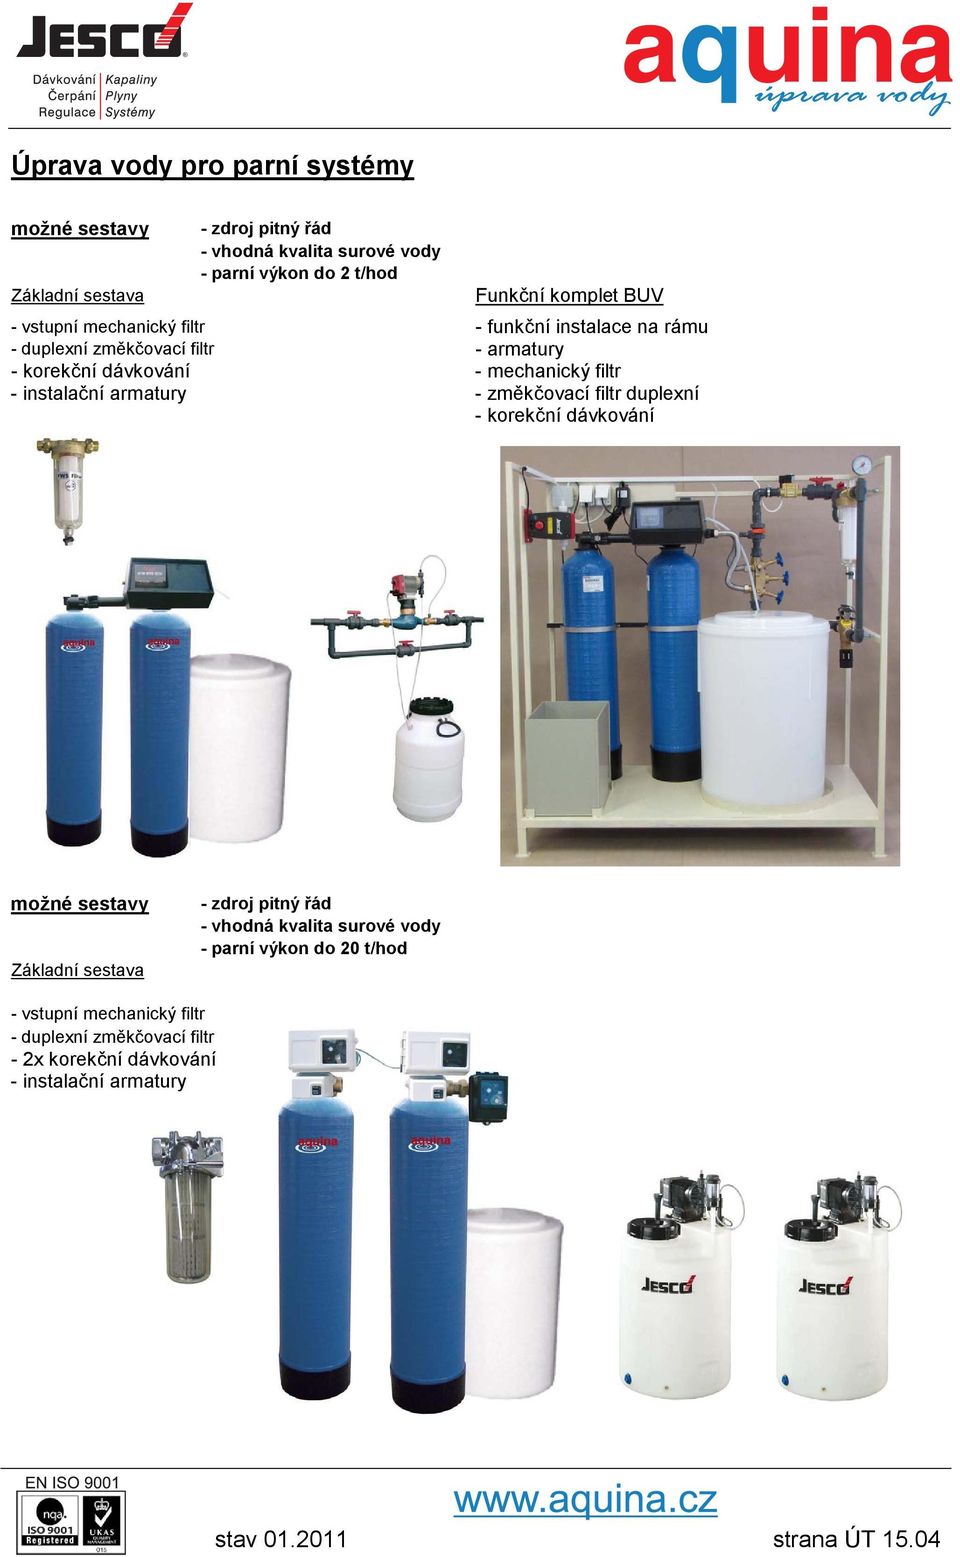 instalační armatury - změkčovací filtr duplexní - zdroj pitný řád - vhodná kvalita surové vody - parní výkon do 20 t/hod